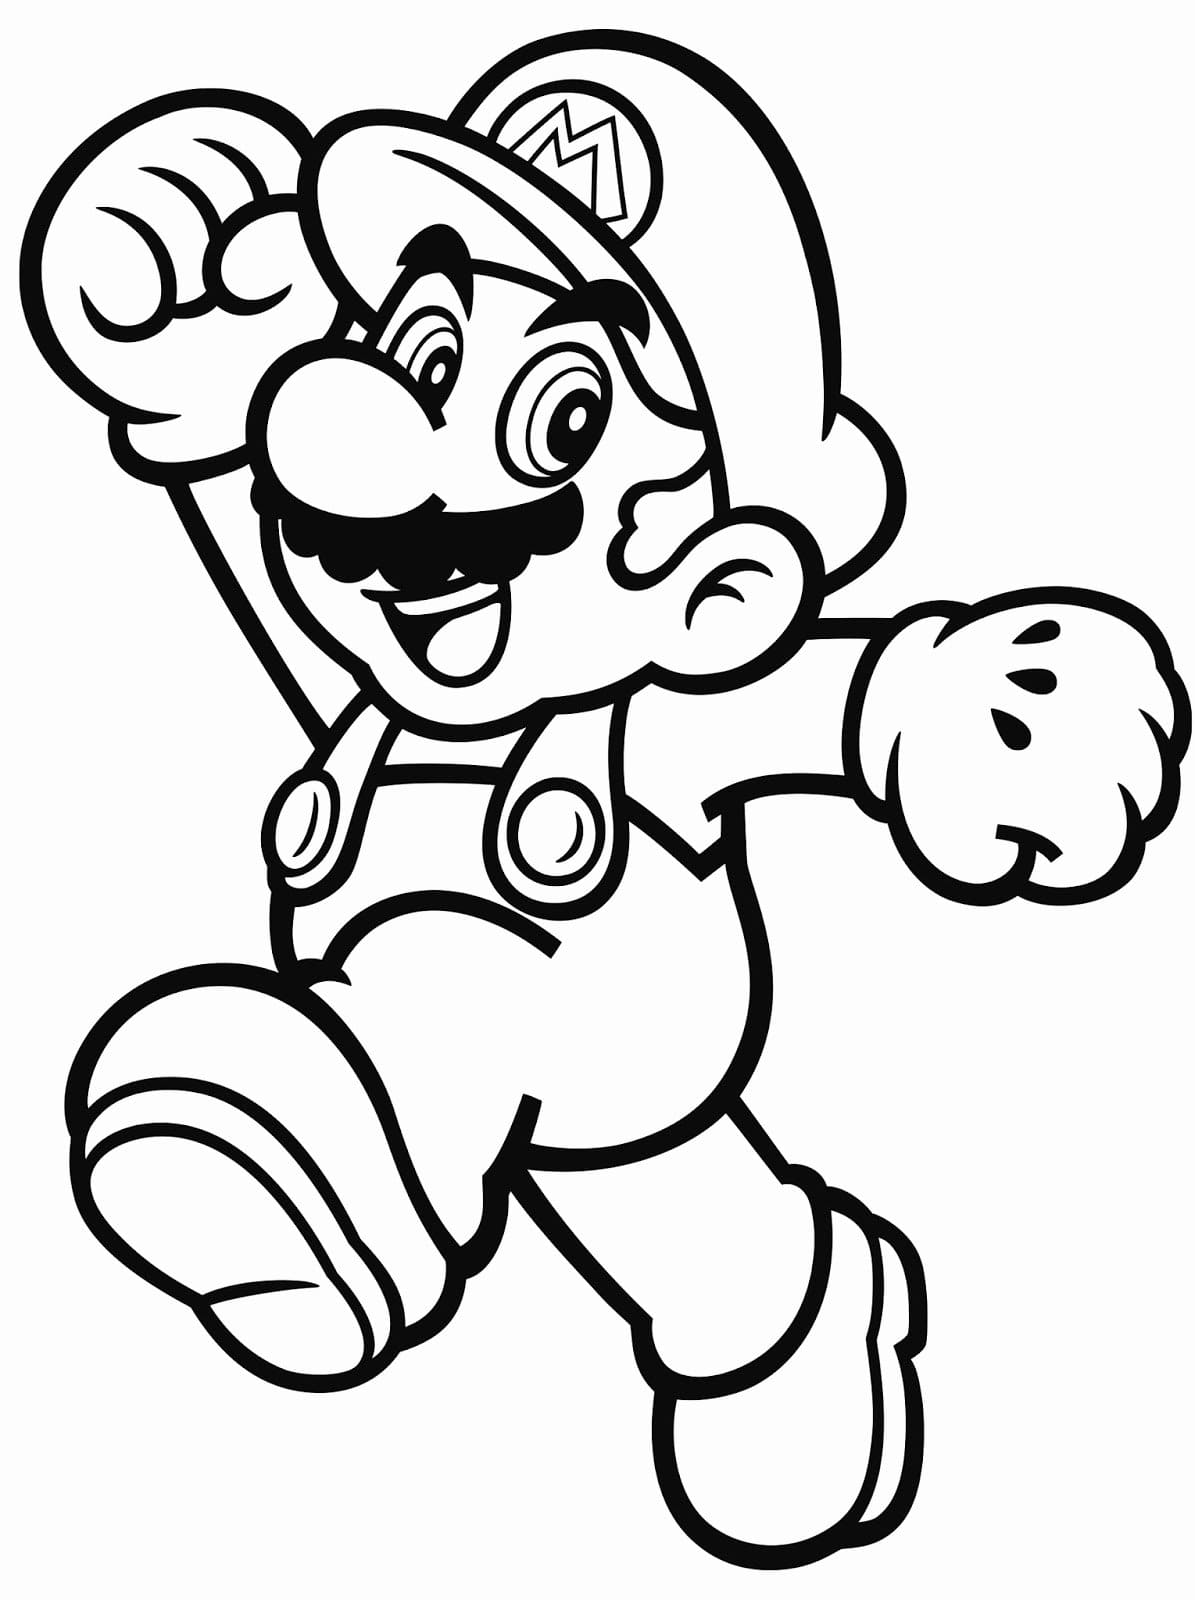 Dibujo 39 de Super Mario para imprimir y colorear